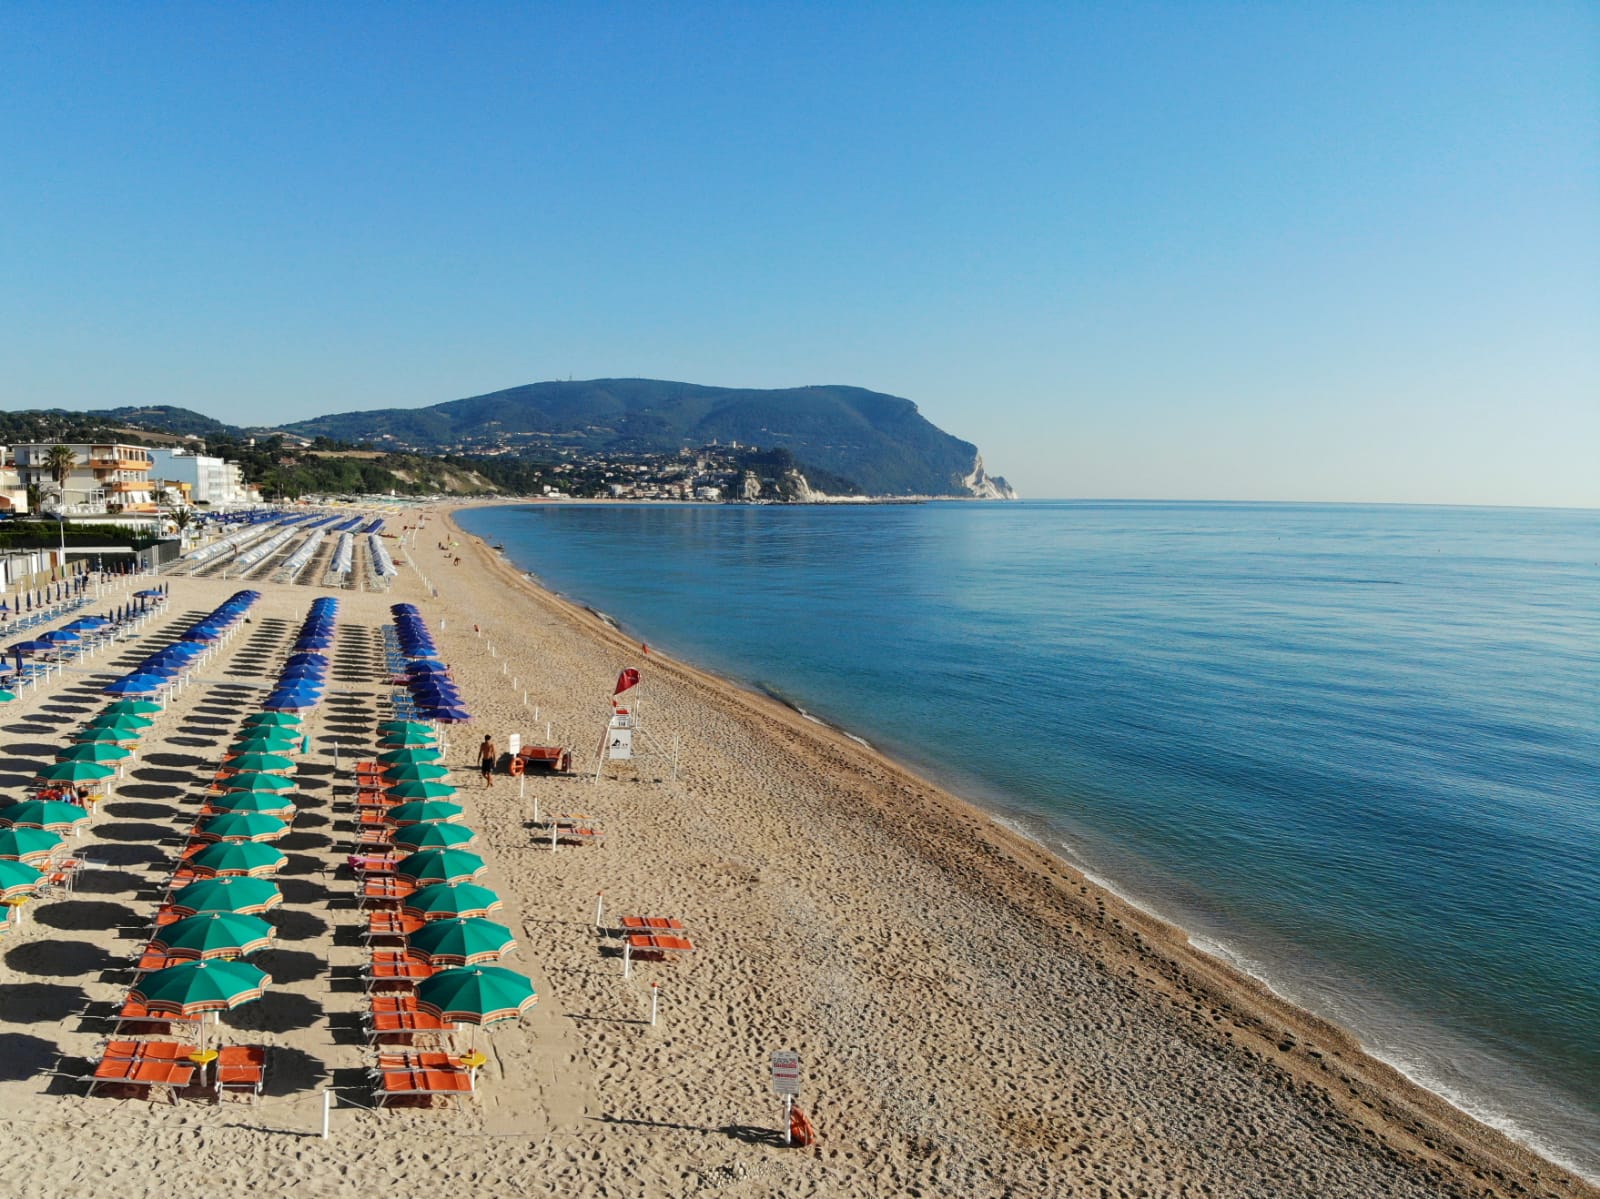 Spiaggia Libera Marcelli'in fotoğrafı hafif ince çakıl taş yüzey ile